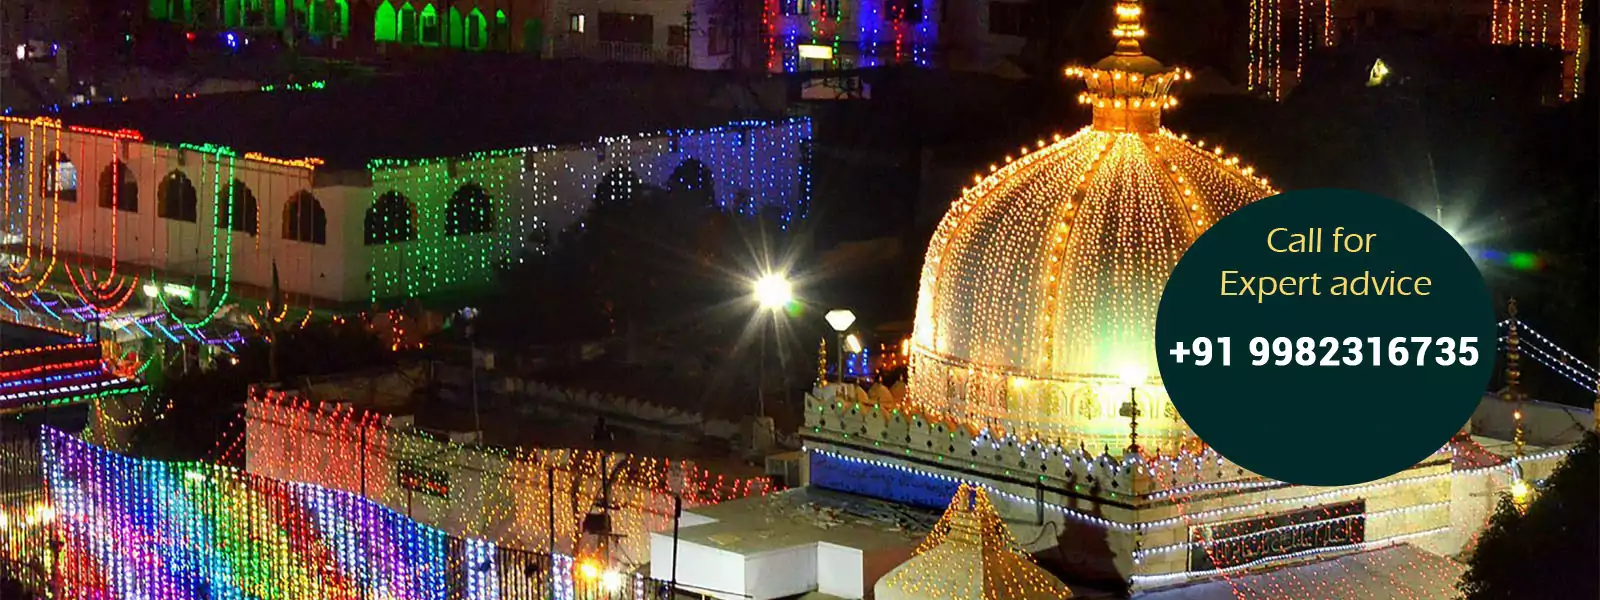 Dargah Sharif Ajmer